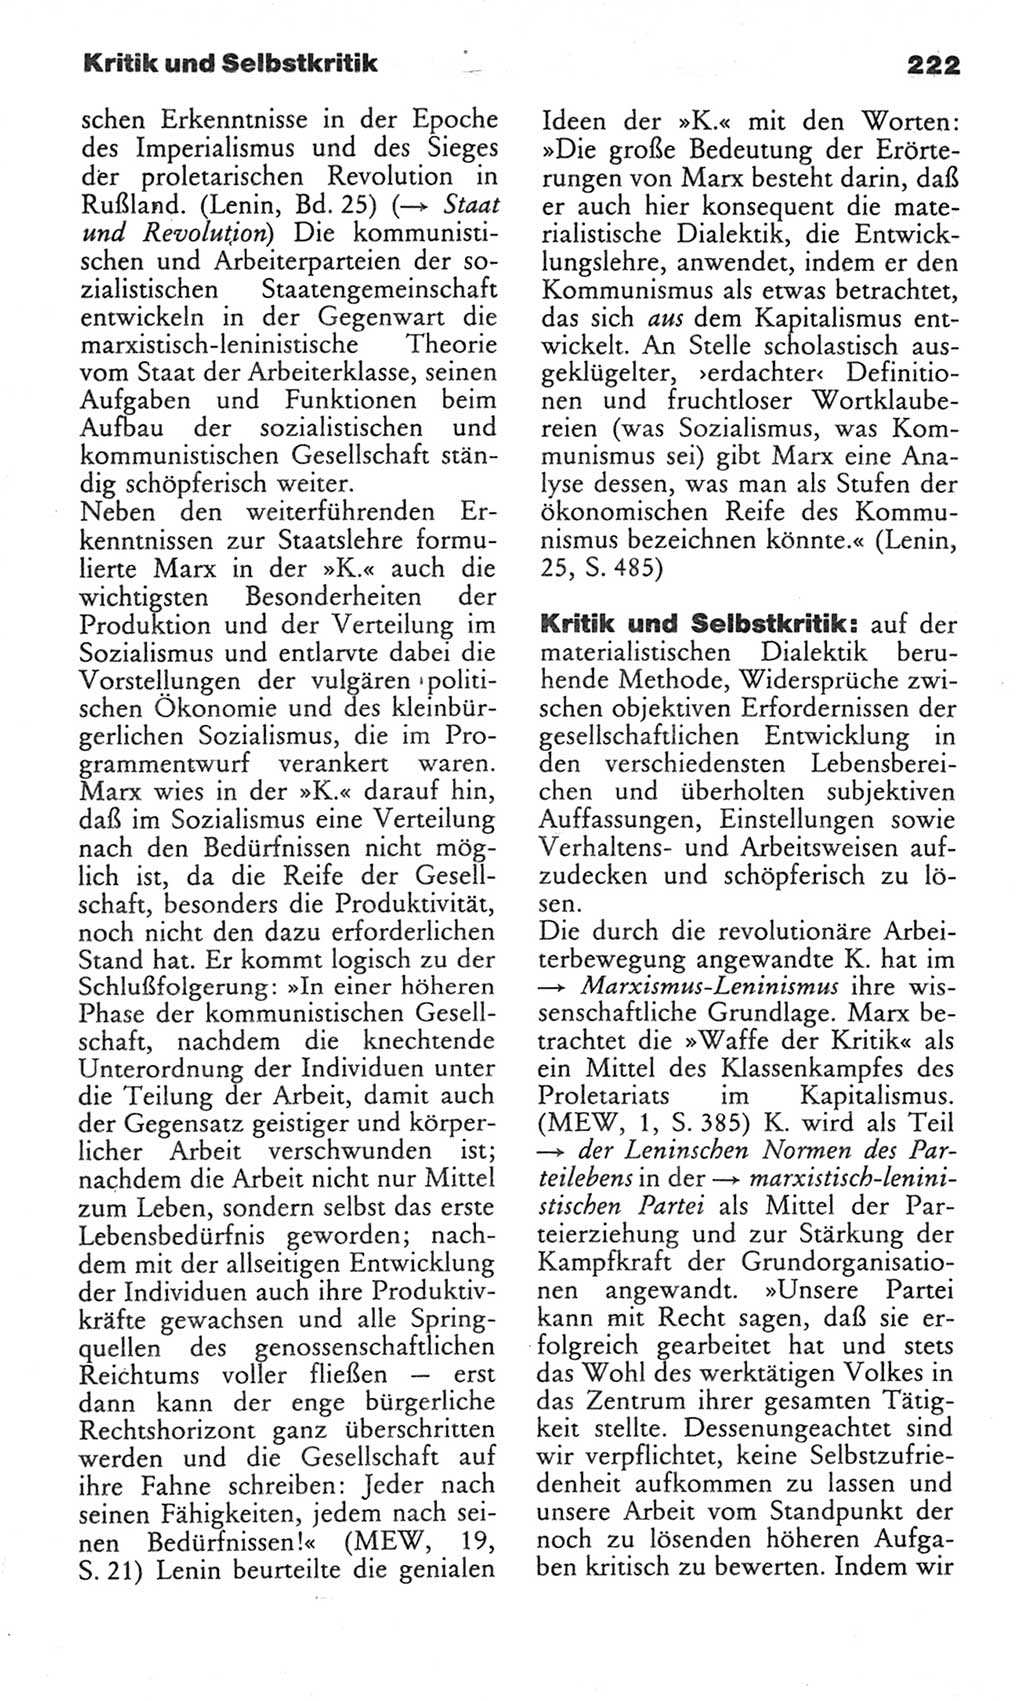 Wörterbuch des wissenschaftlichen Kommunismus [Deutsche Demokratische Republik (DDR)] 1982, Seite 222 (Wb. wiss. Komm. DDR 1982, S. 222)